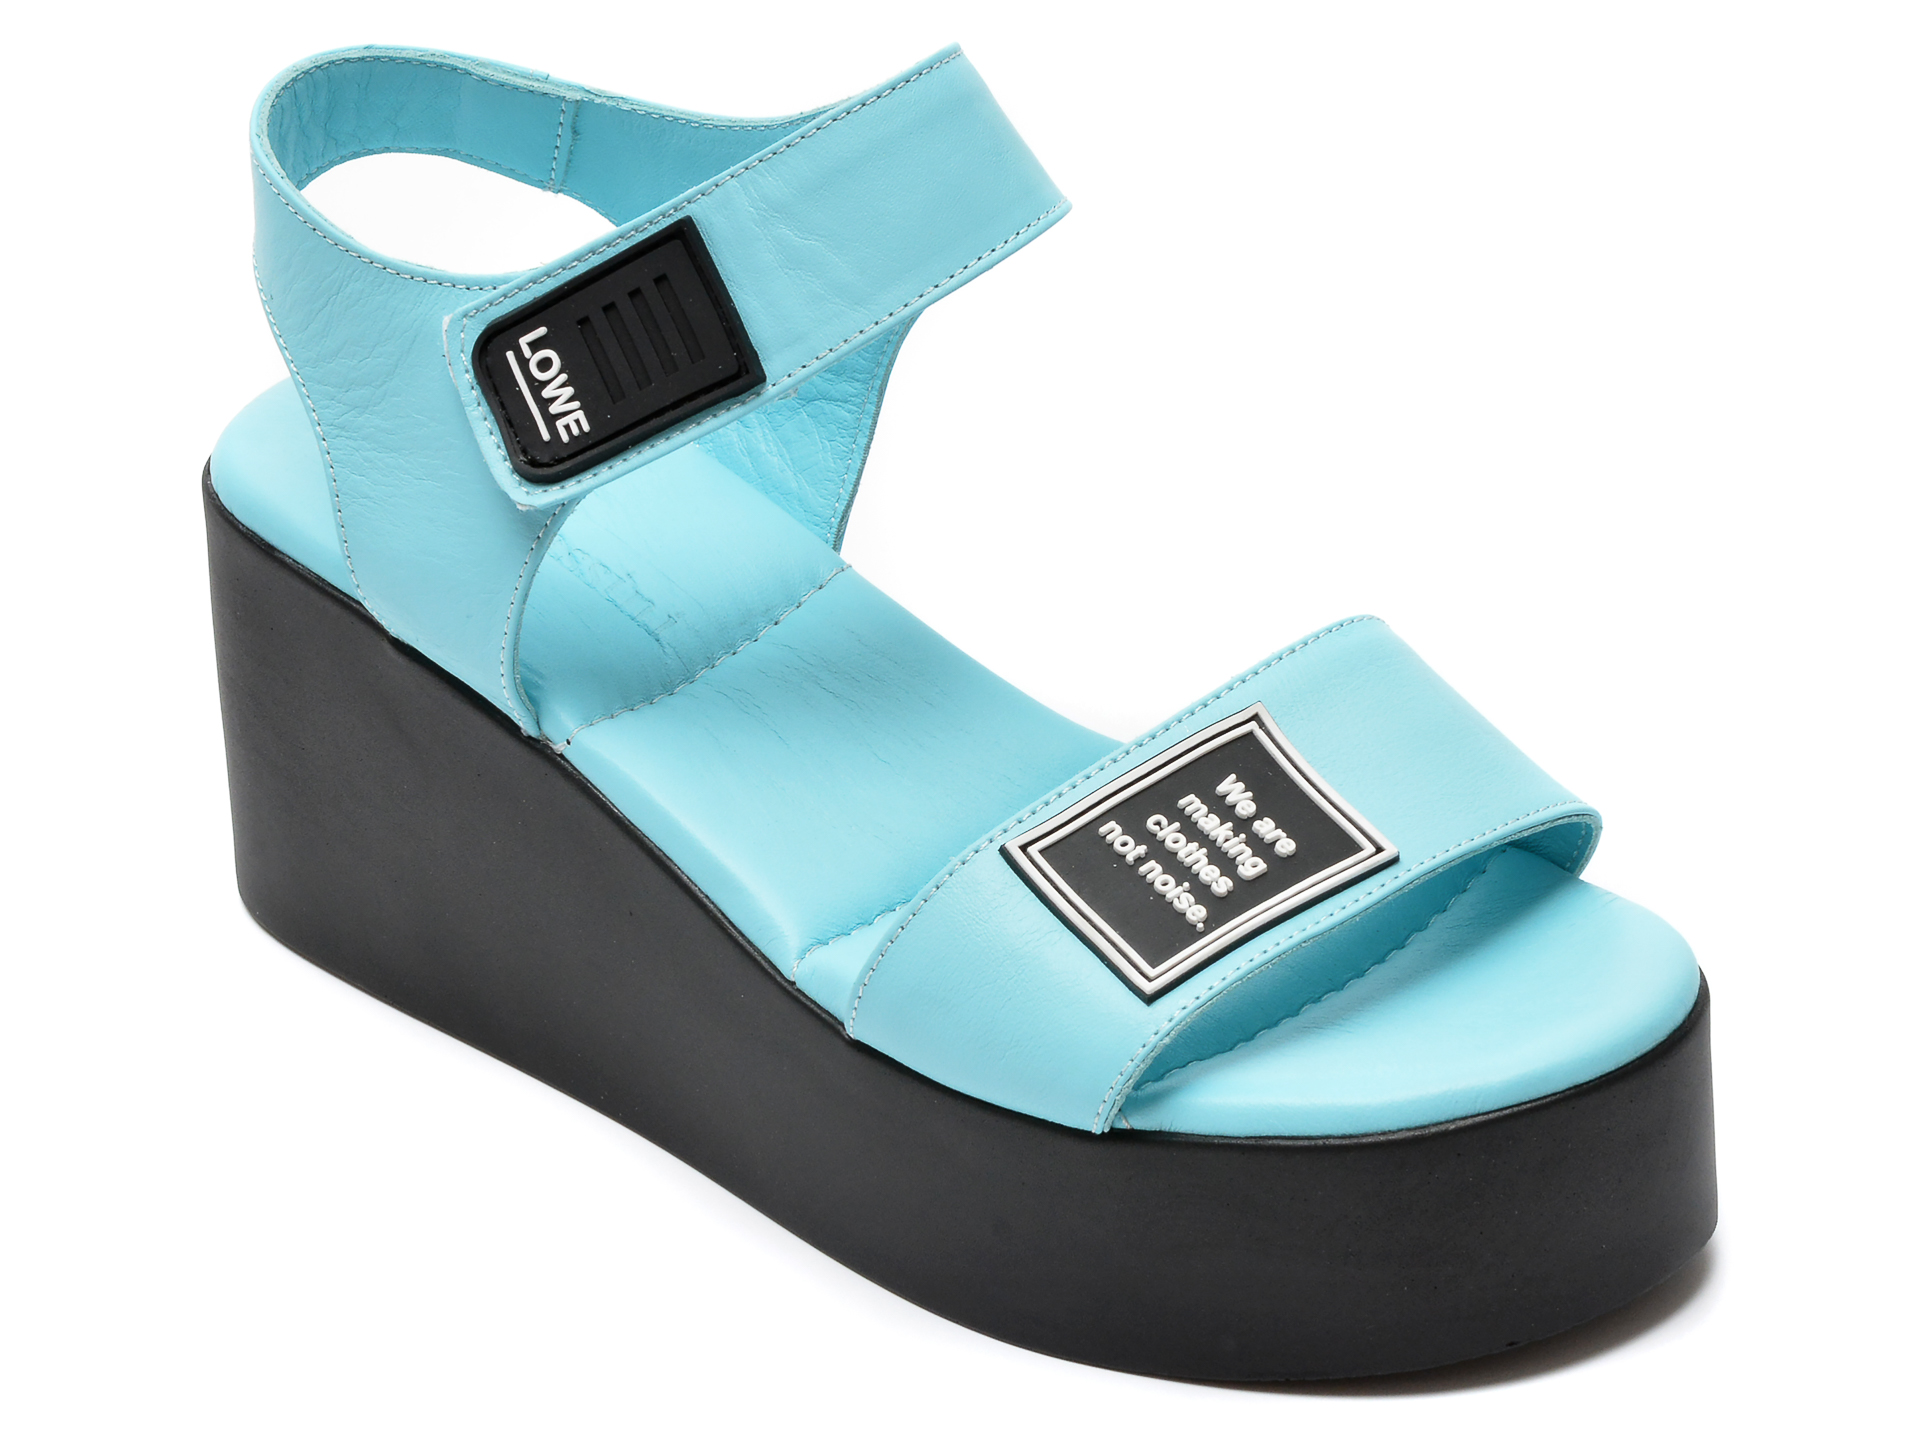 Sandale FLAVIA PASSINI albastre, 882648, din piele naturala /femei/sandale